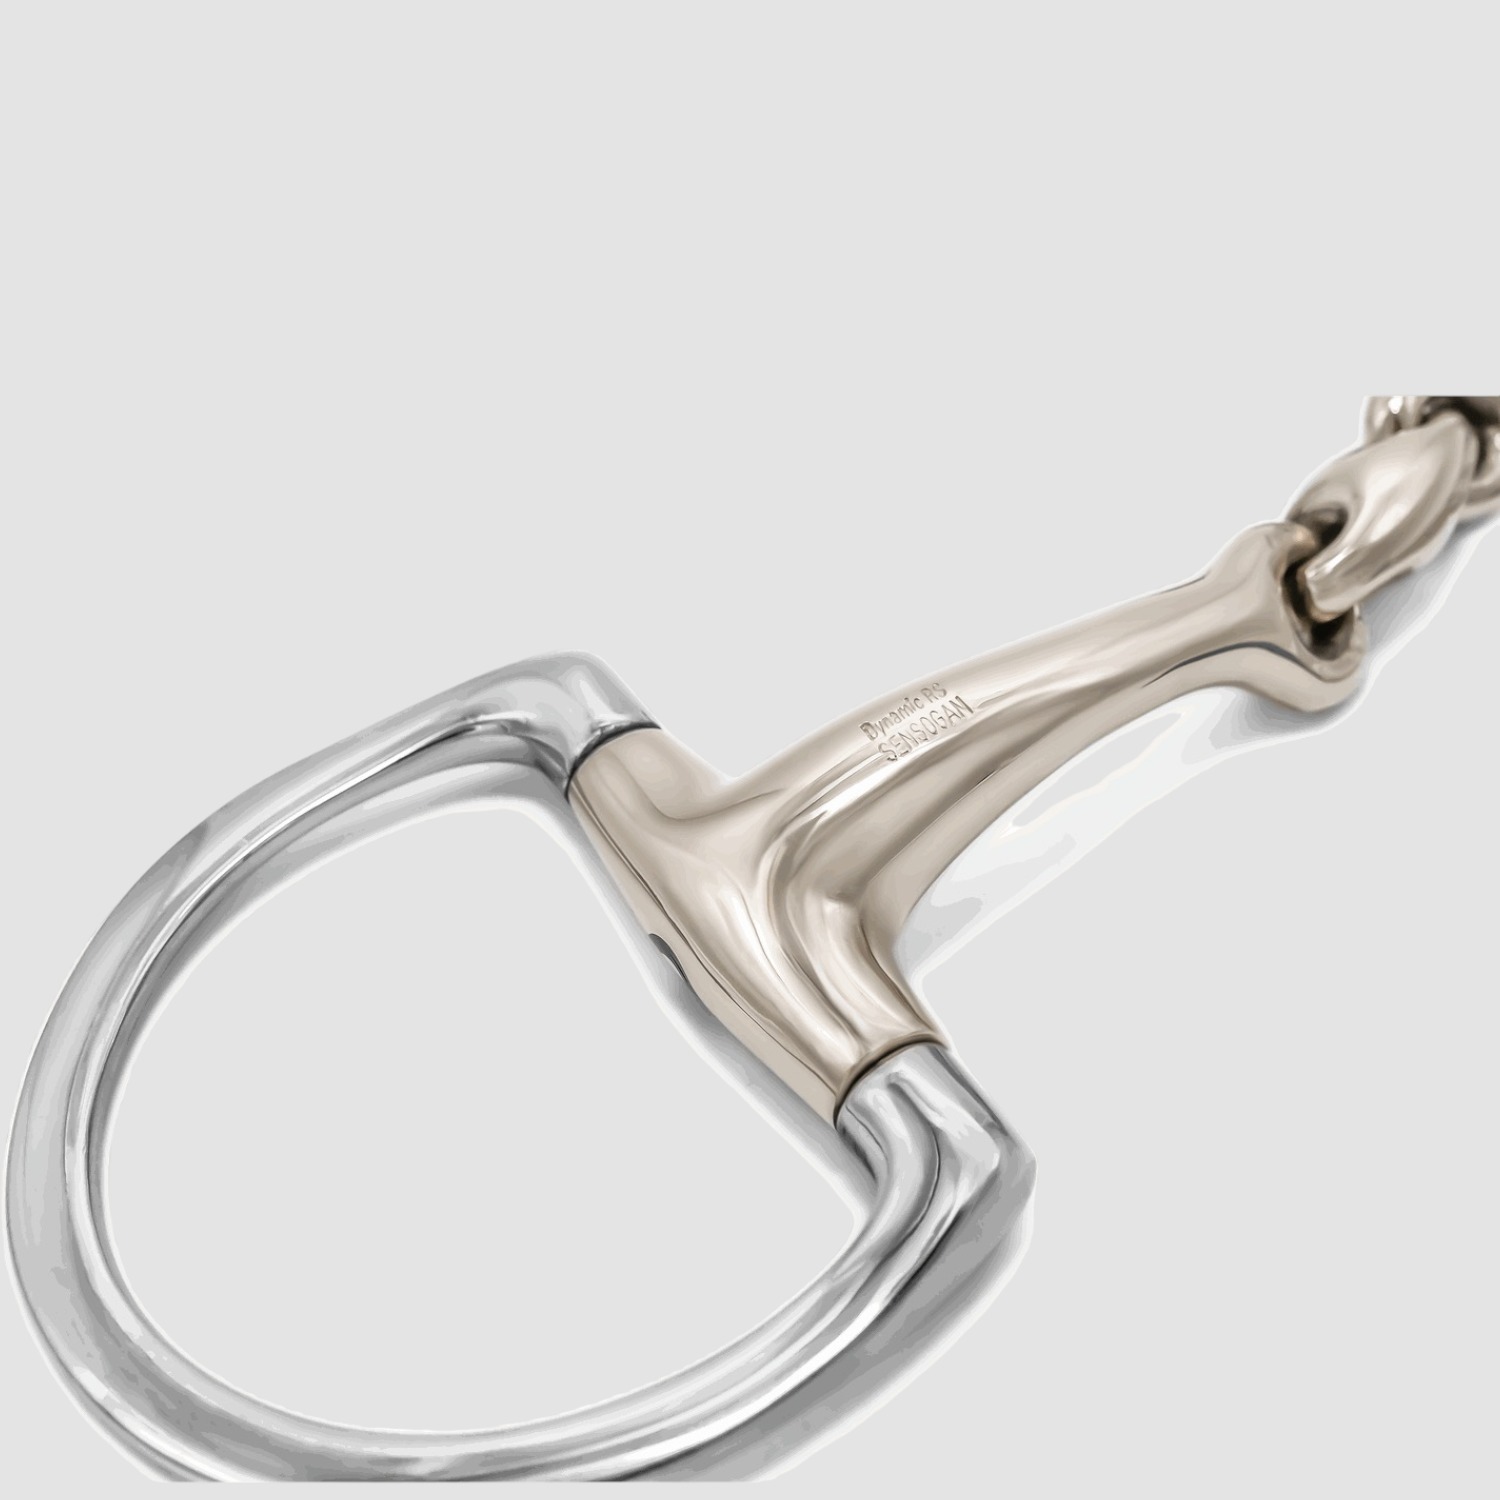 Sprenger Dynamic RS Olivenkopfgebiss m. D-förmigen Ringen doppelt gebrochen 14mm